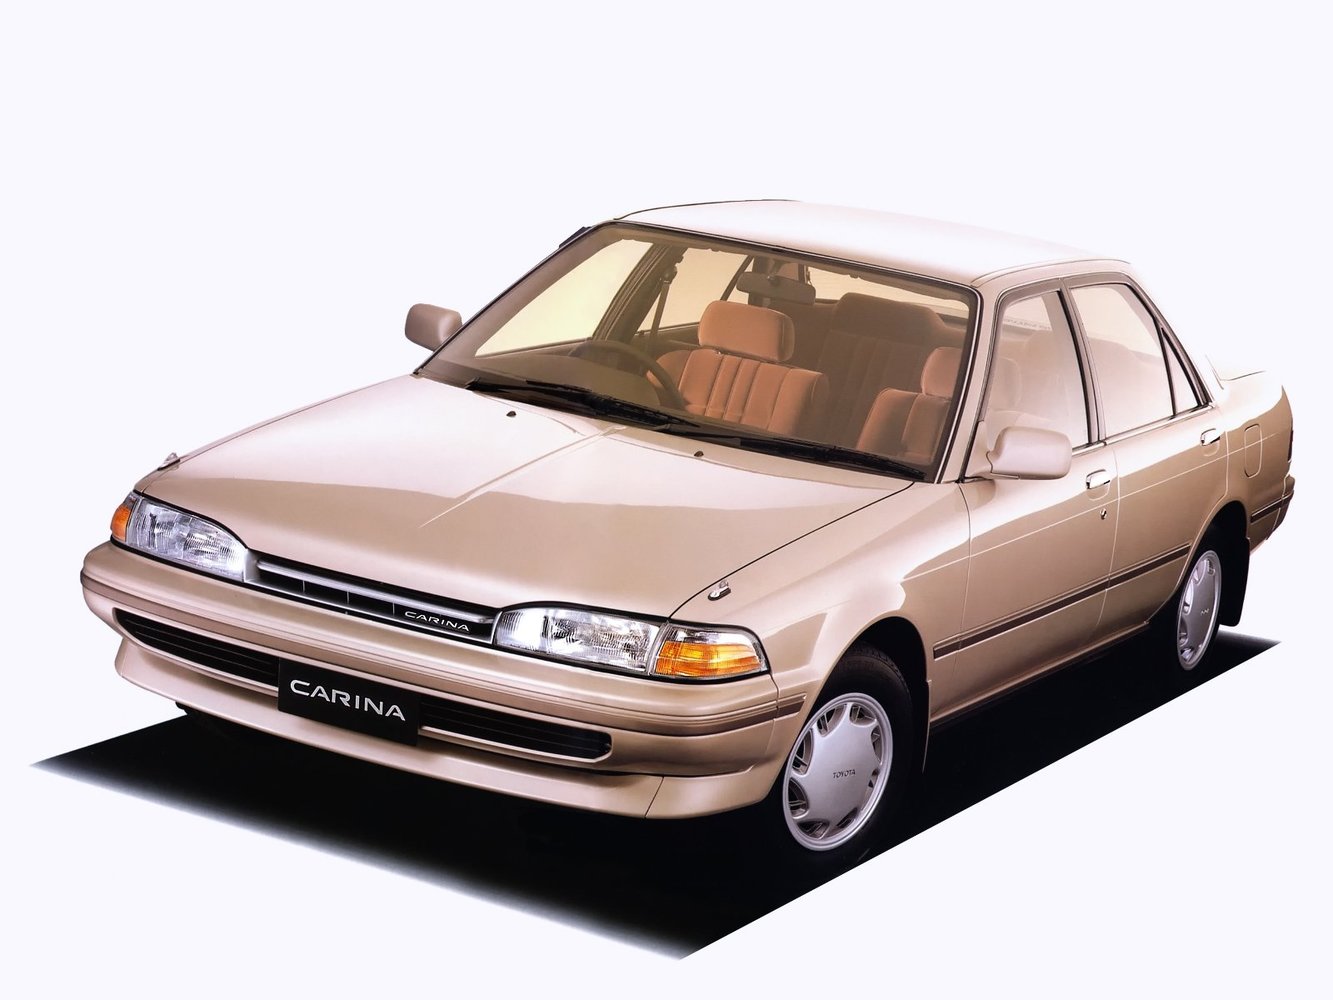 хэтчбек 5 дв. Toyota Carina 1988 - 1992г выпуска модификация 1.6 AT (102 л.с.)